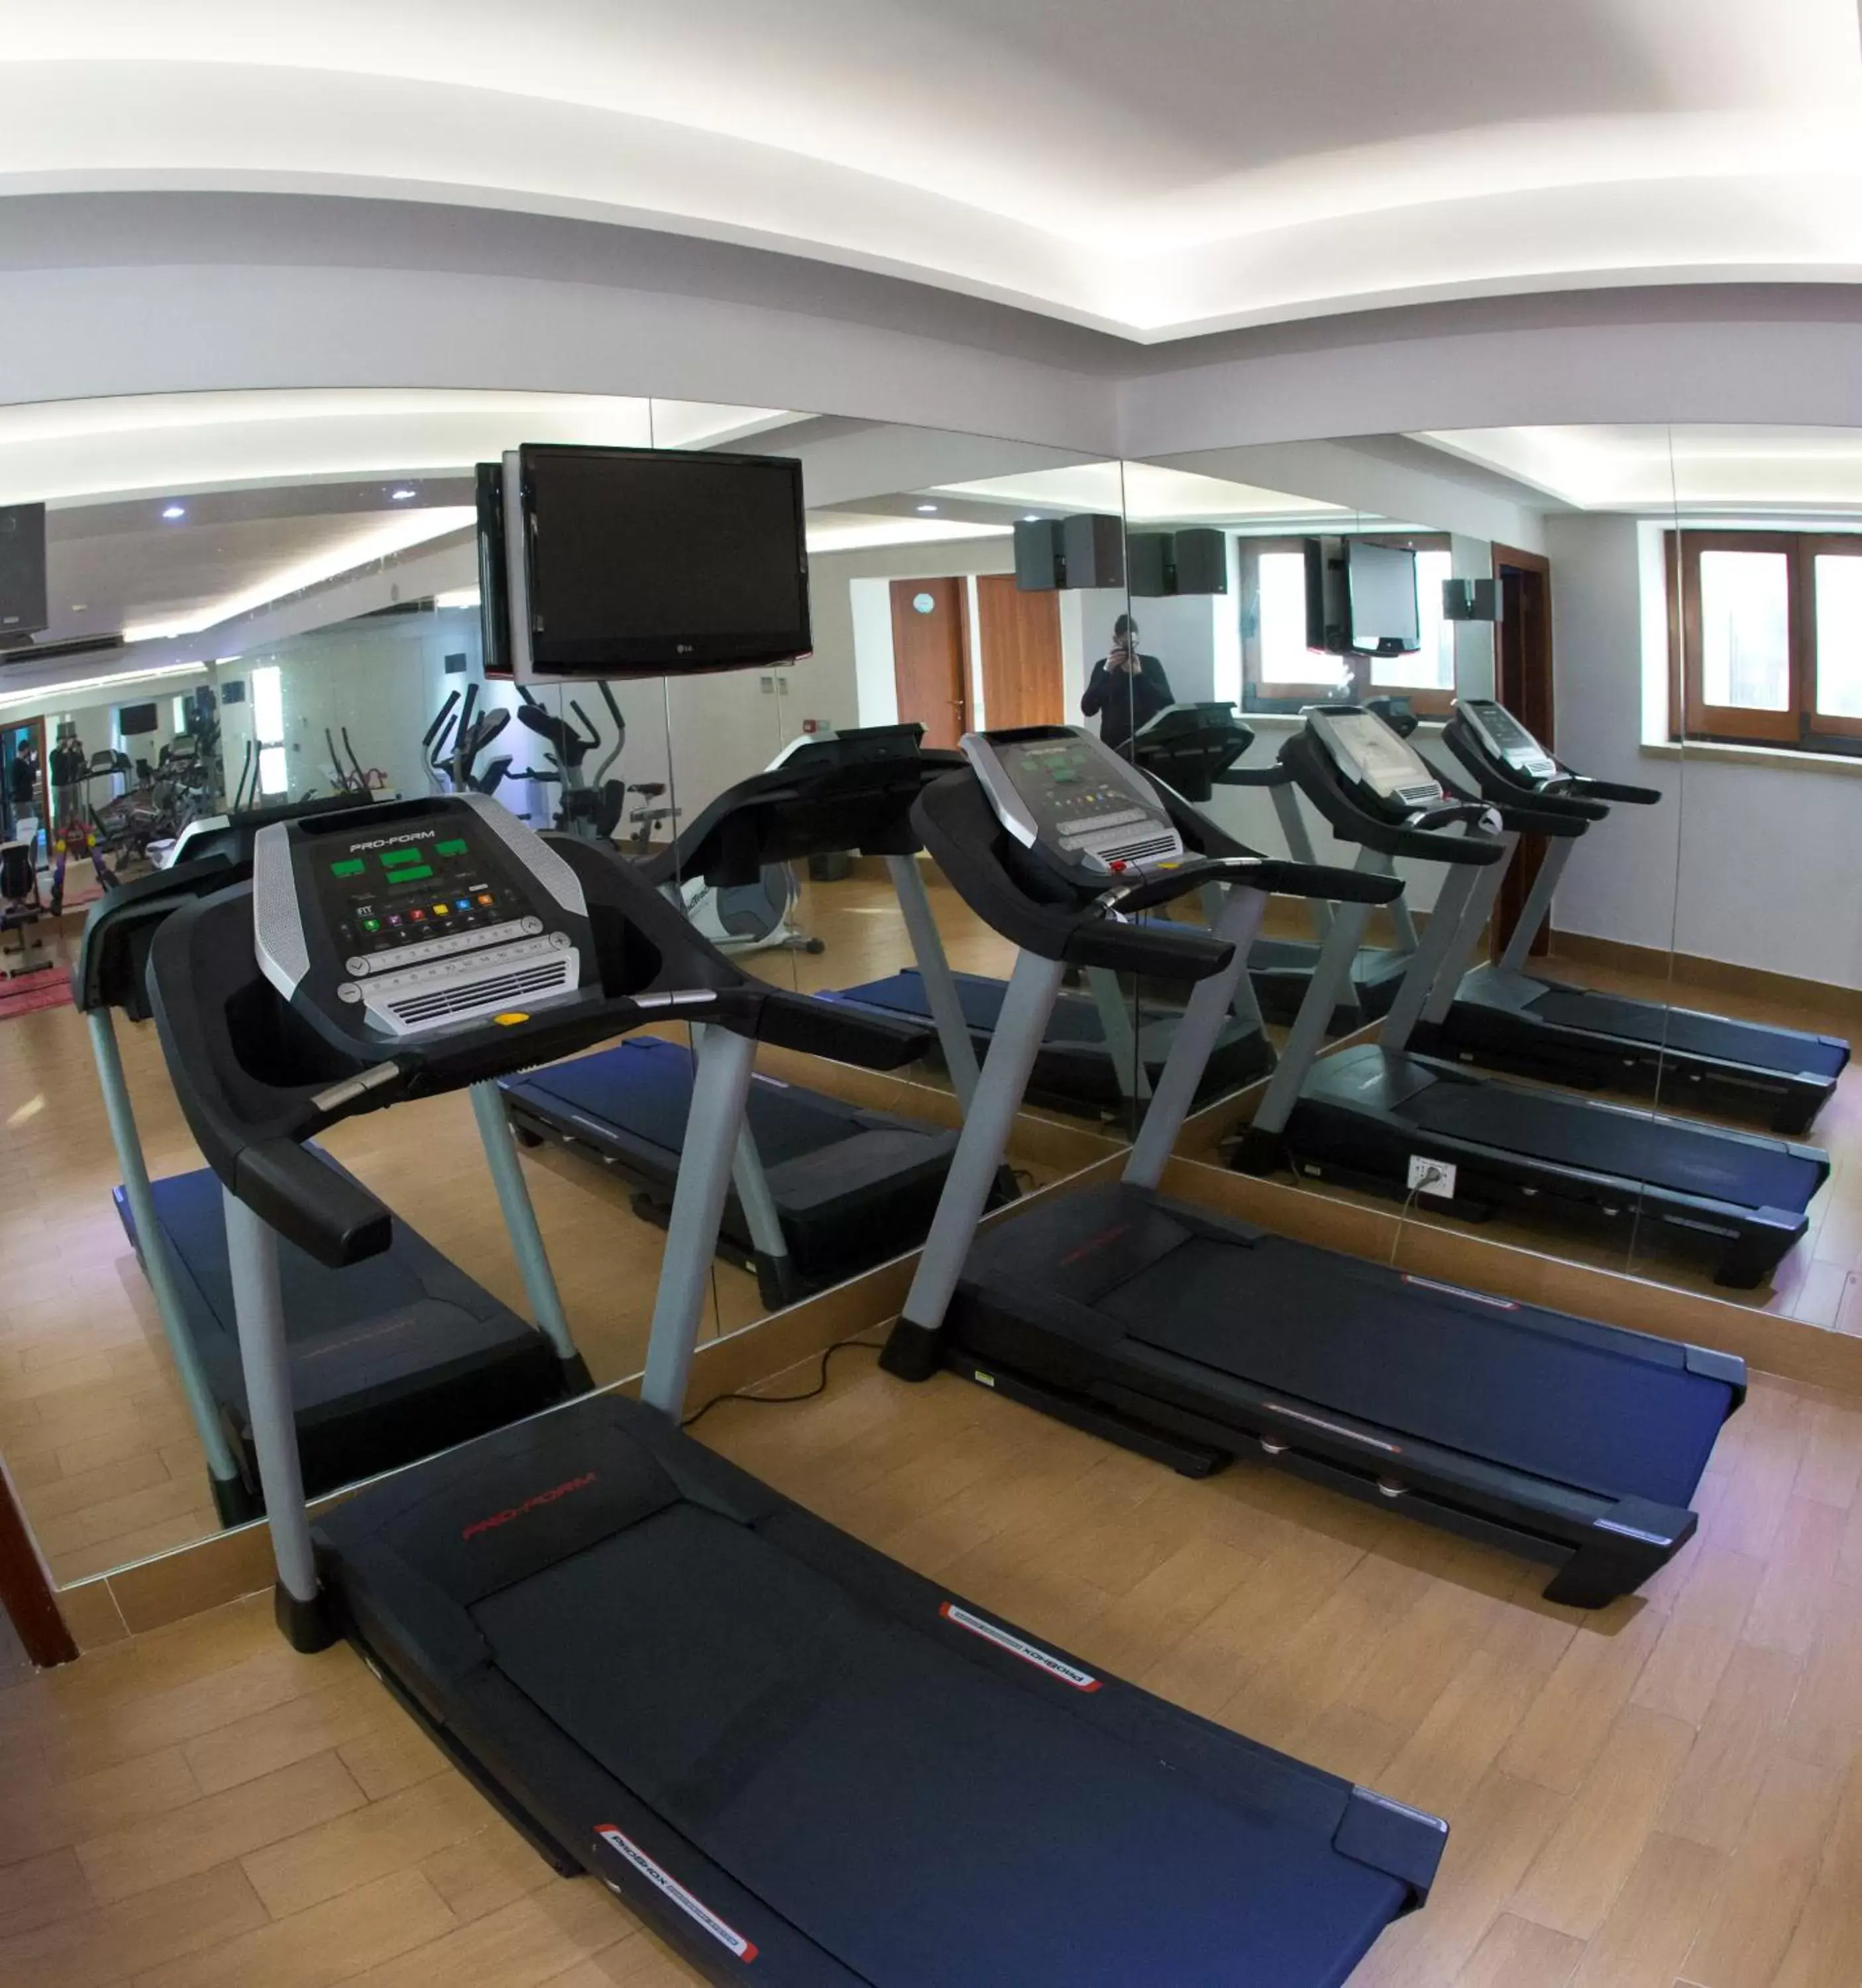 Fitness centre/facilities, Fitness Center/Facilities in Hotel Villa Luisa